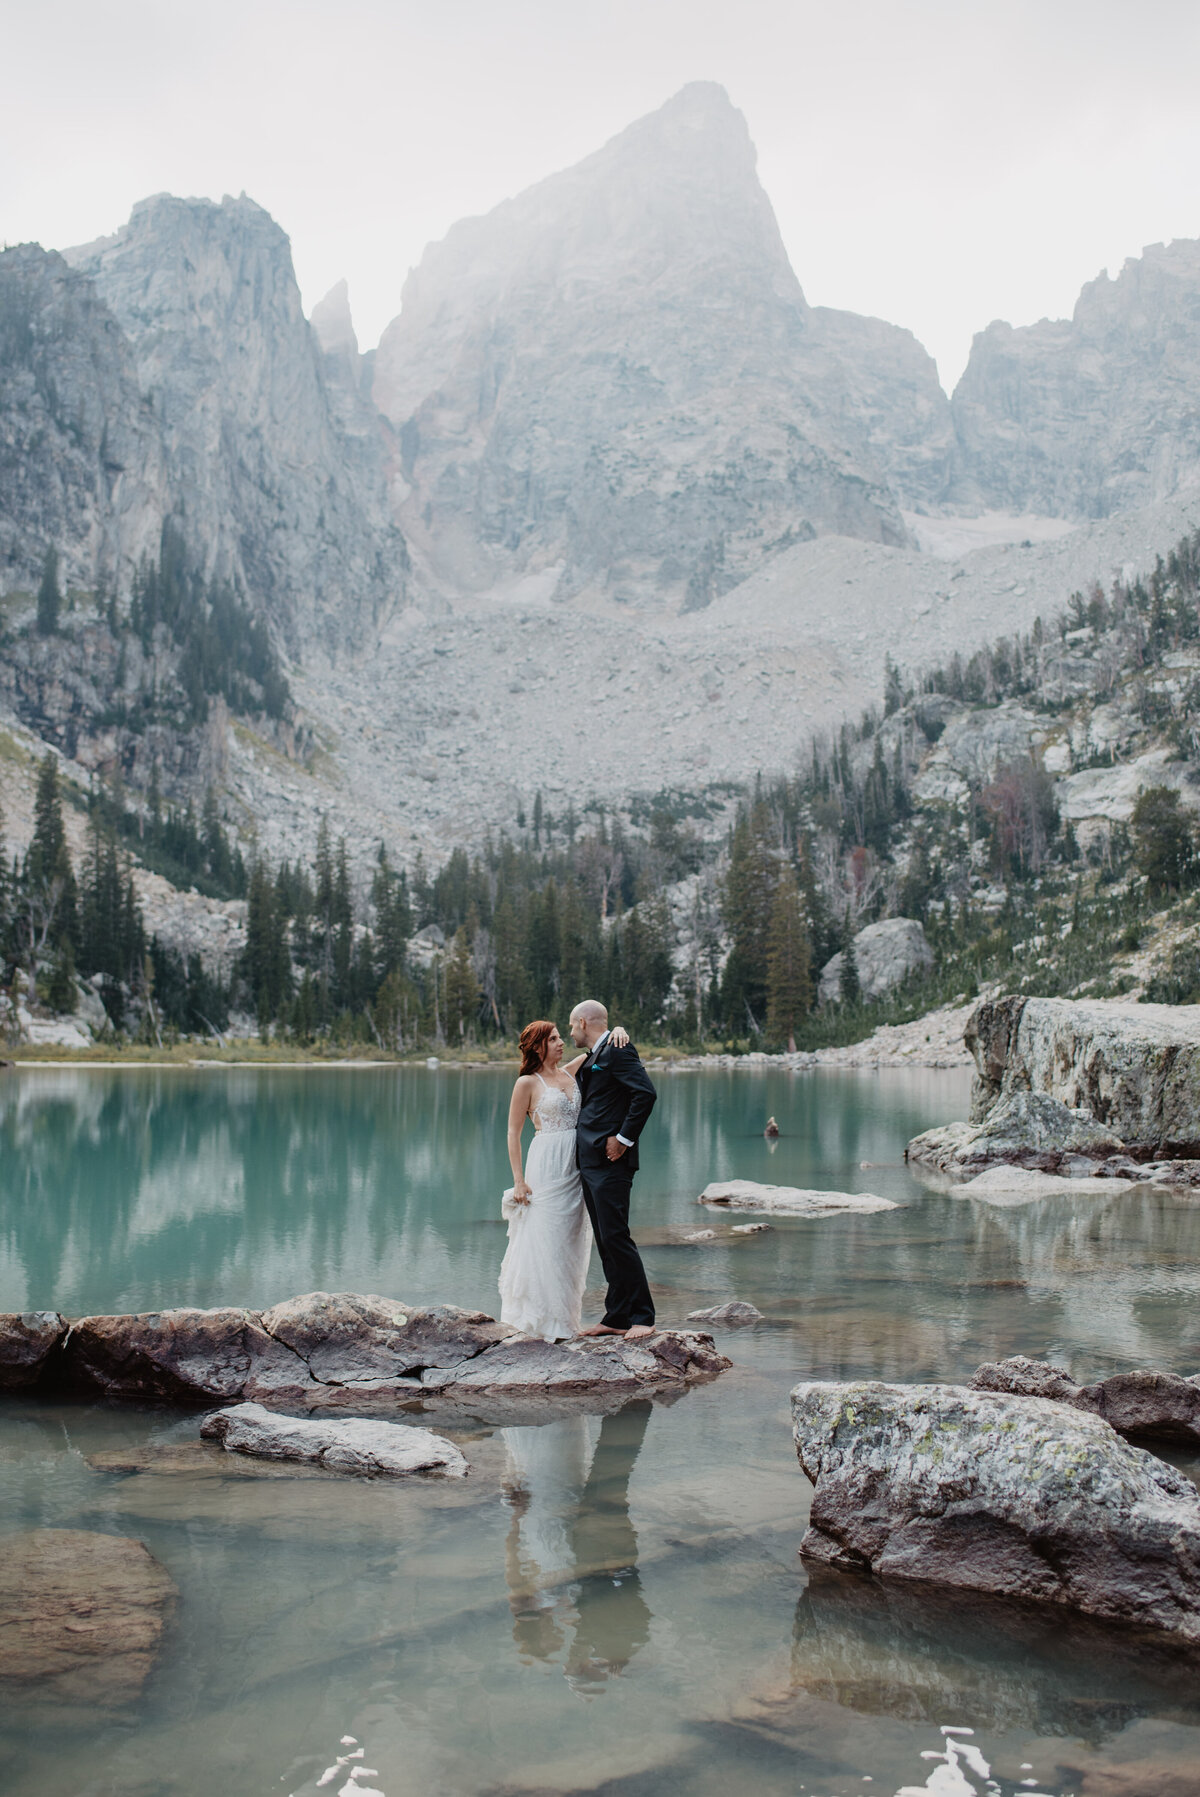 Jackson Hole Photographers capture bride embracing husband